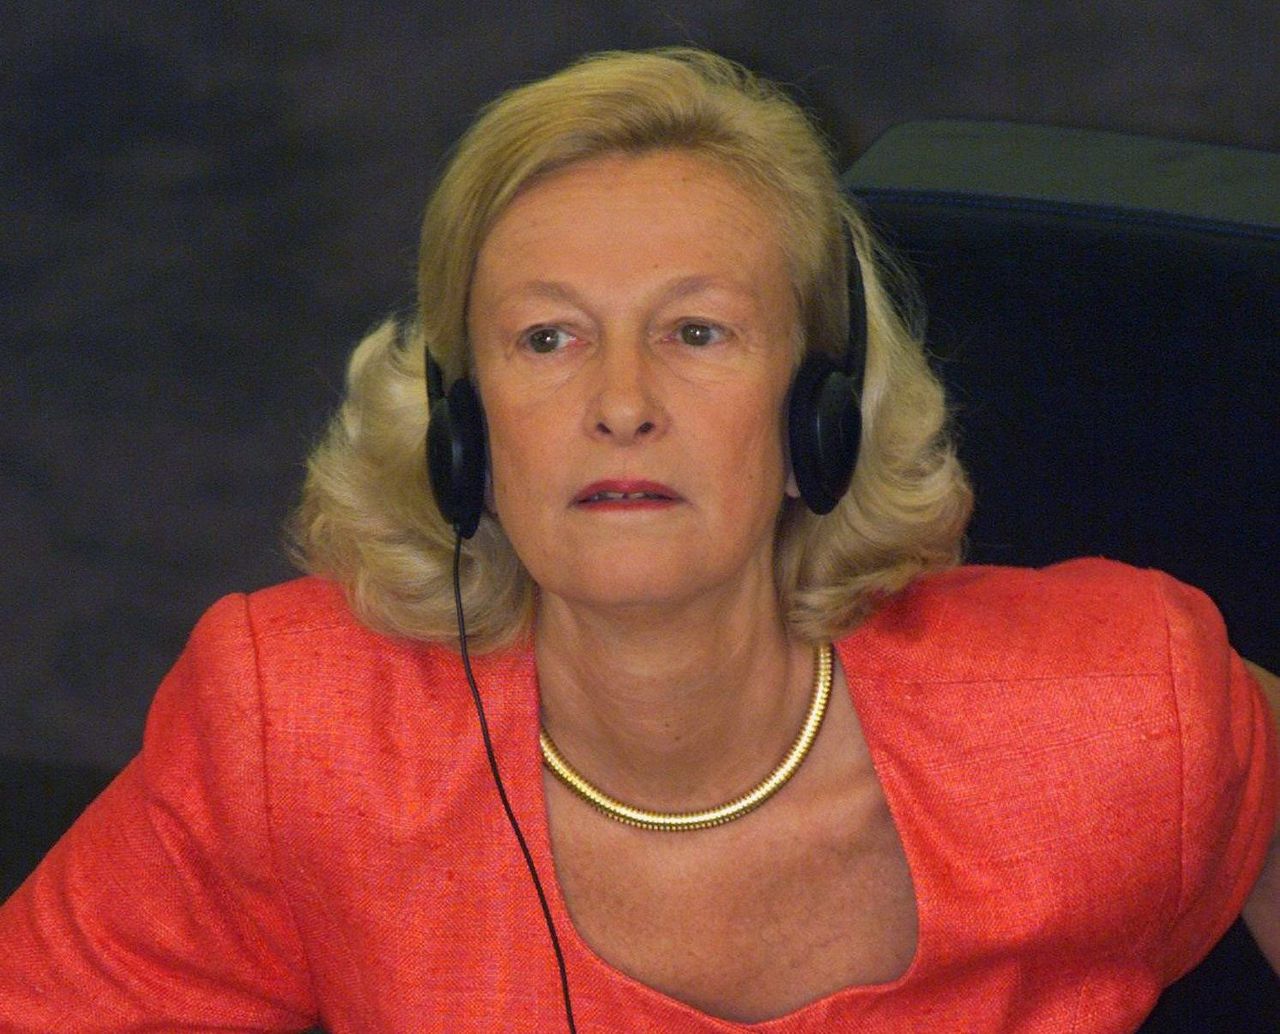 De Franse politica Nicole Fontaine werd in 1999, toen deze foto werd genomen, verkozen tot voorzitter van het Europees Parlement.